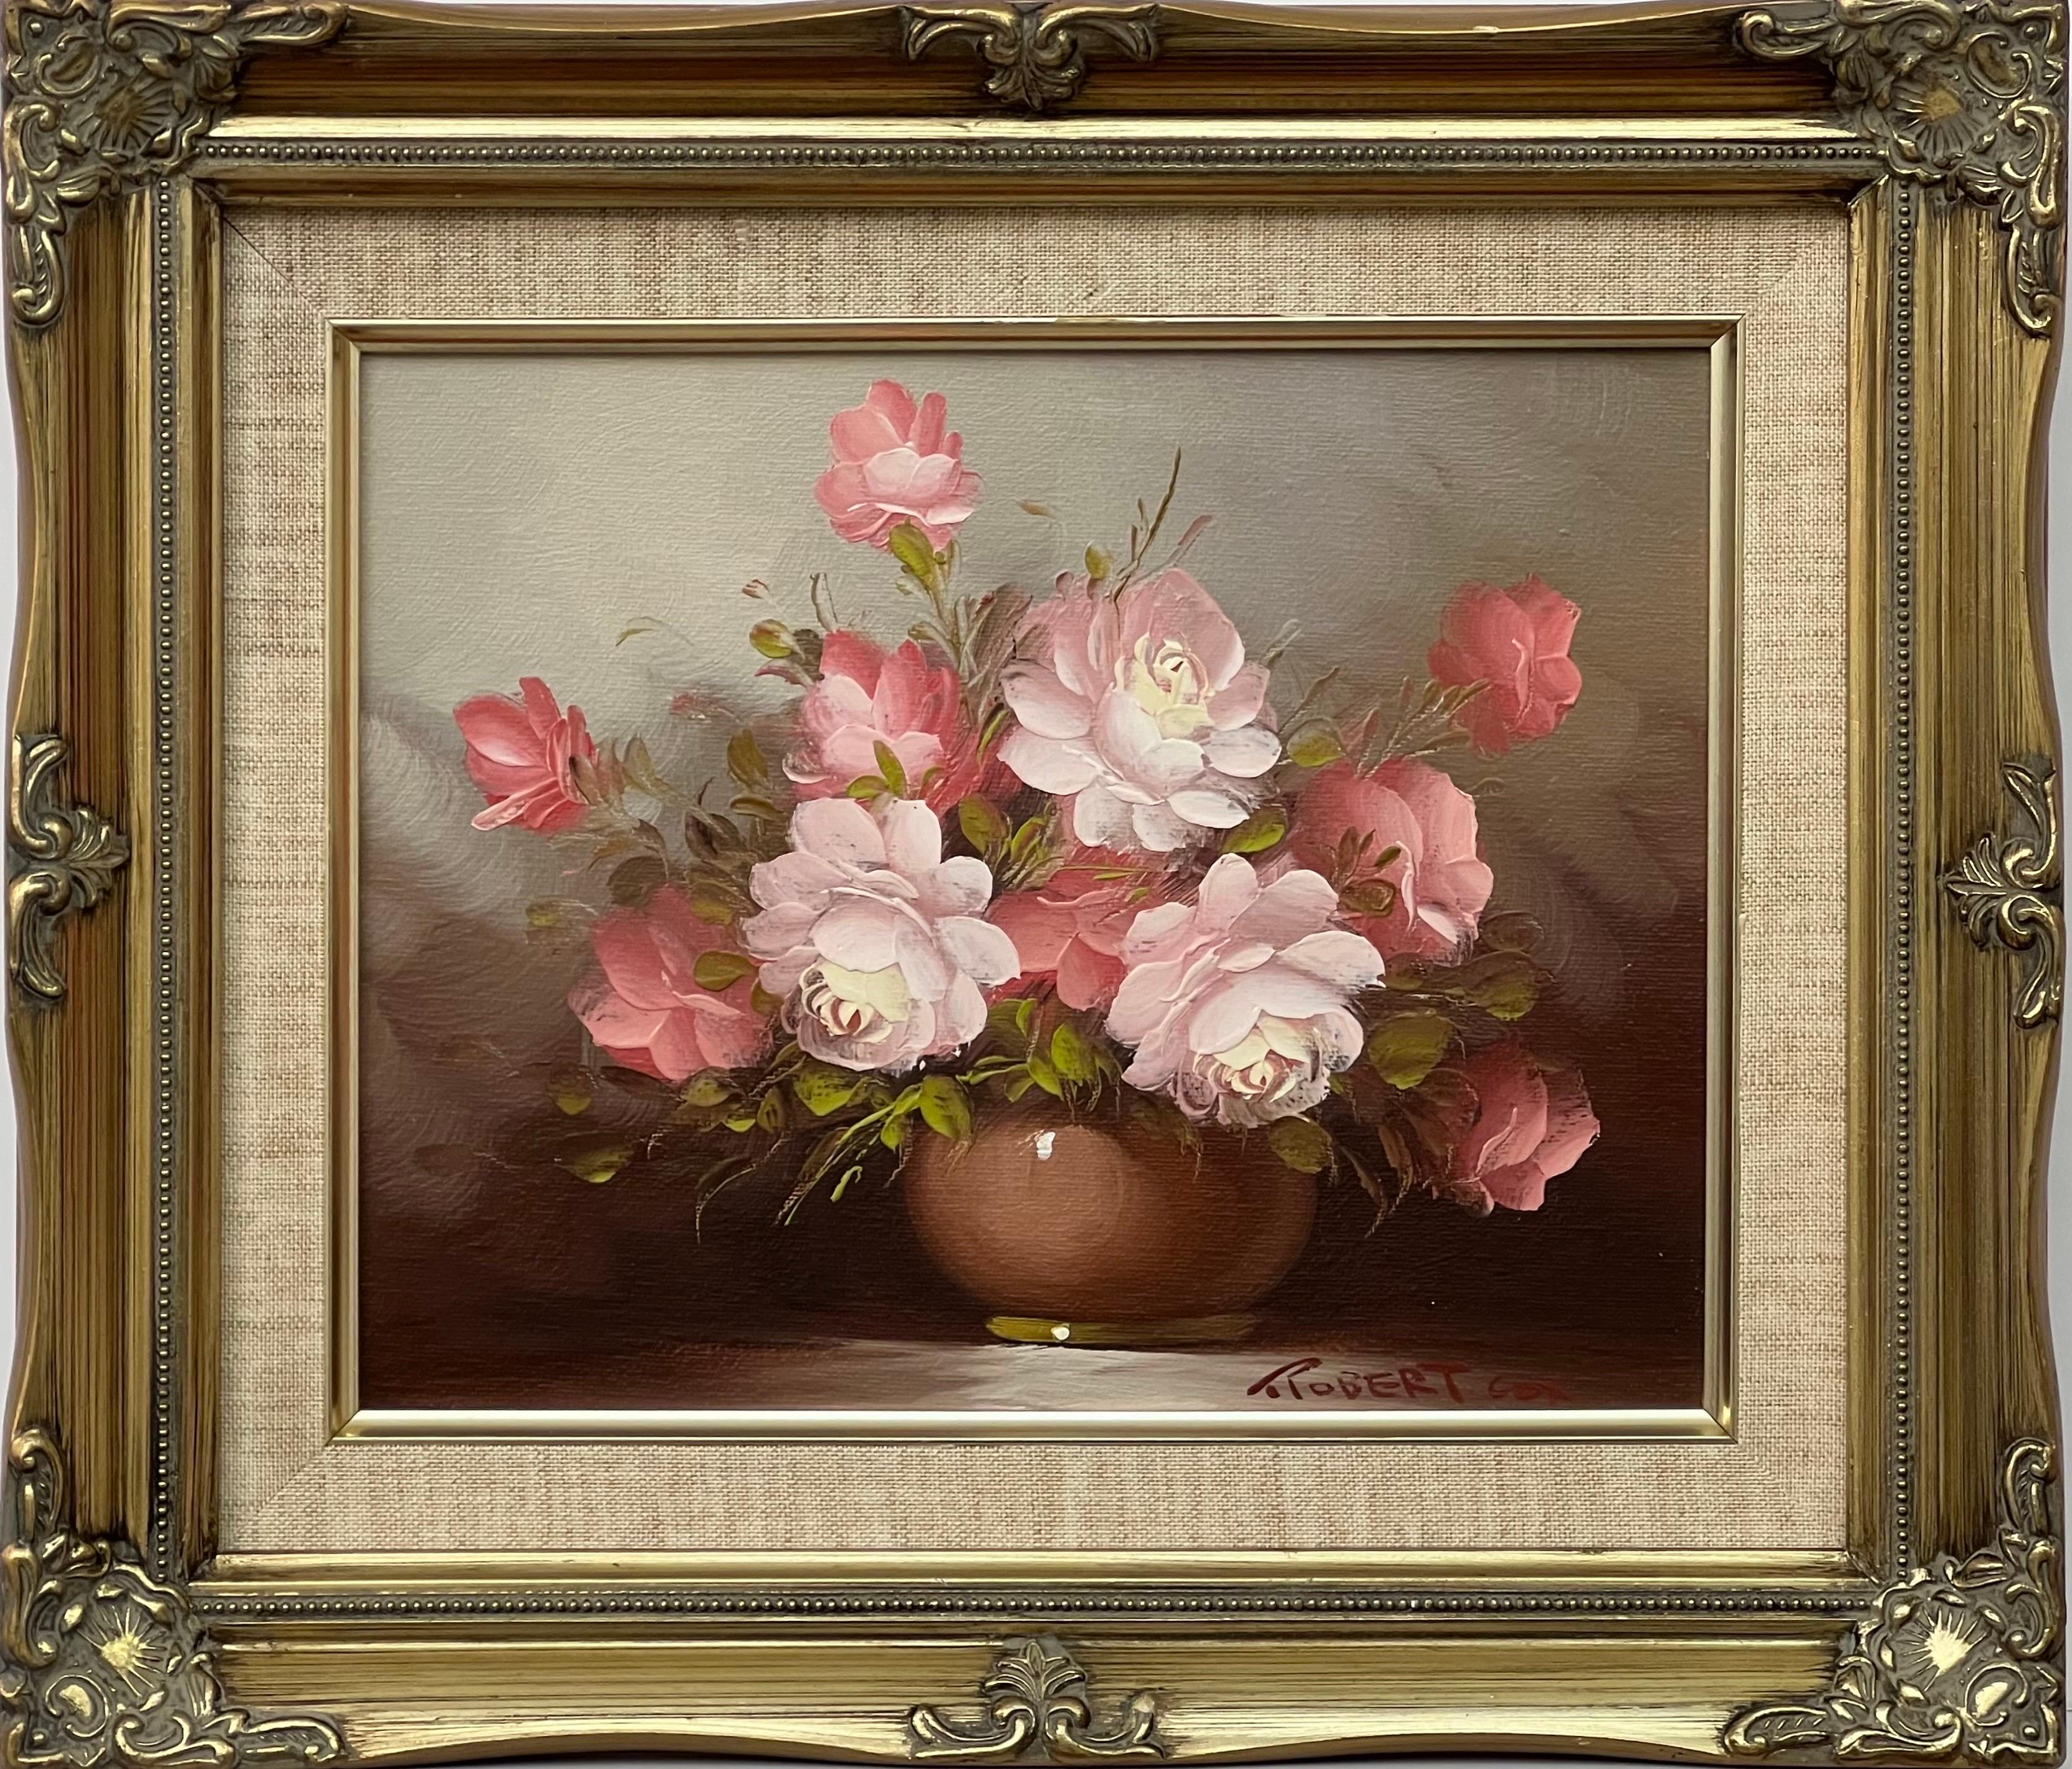 Interior Painting Robert Cox - Nature morte d'un vase de roses rouges et blanches par un artiste américain du 20e siècle